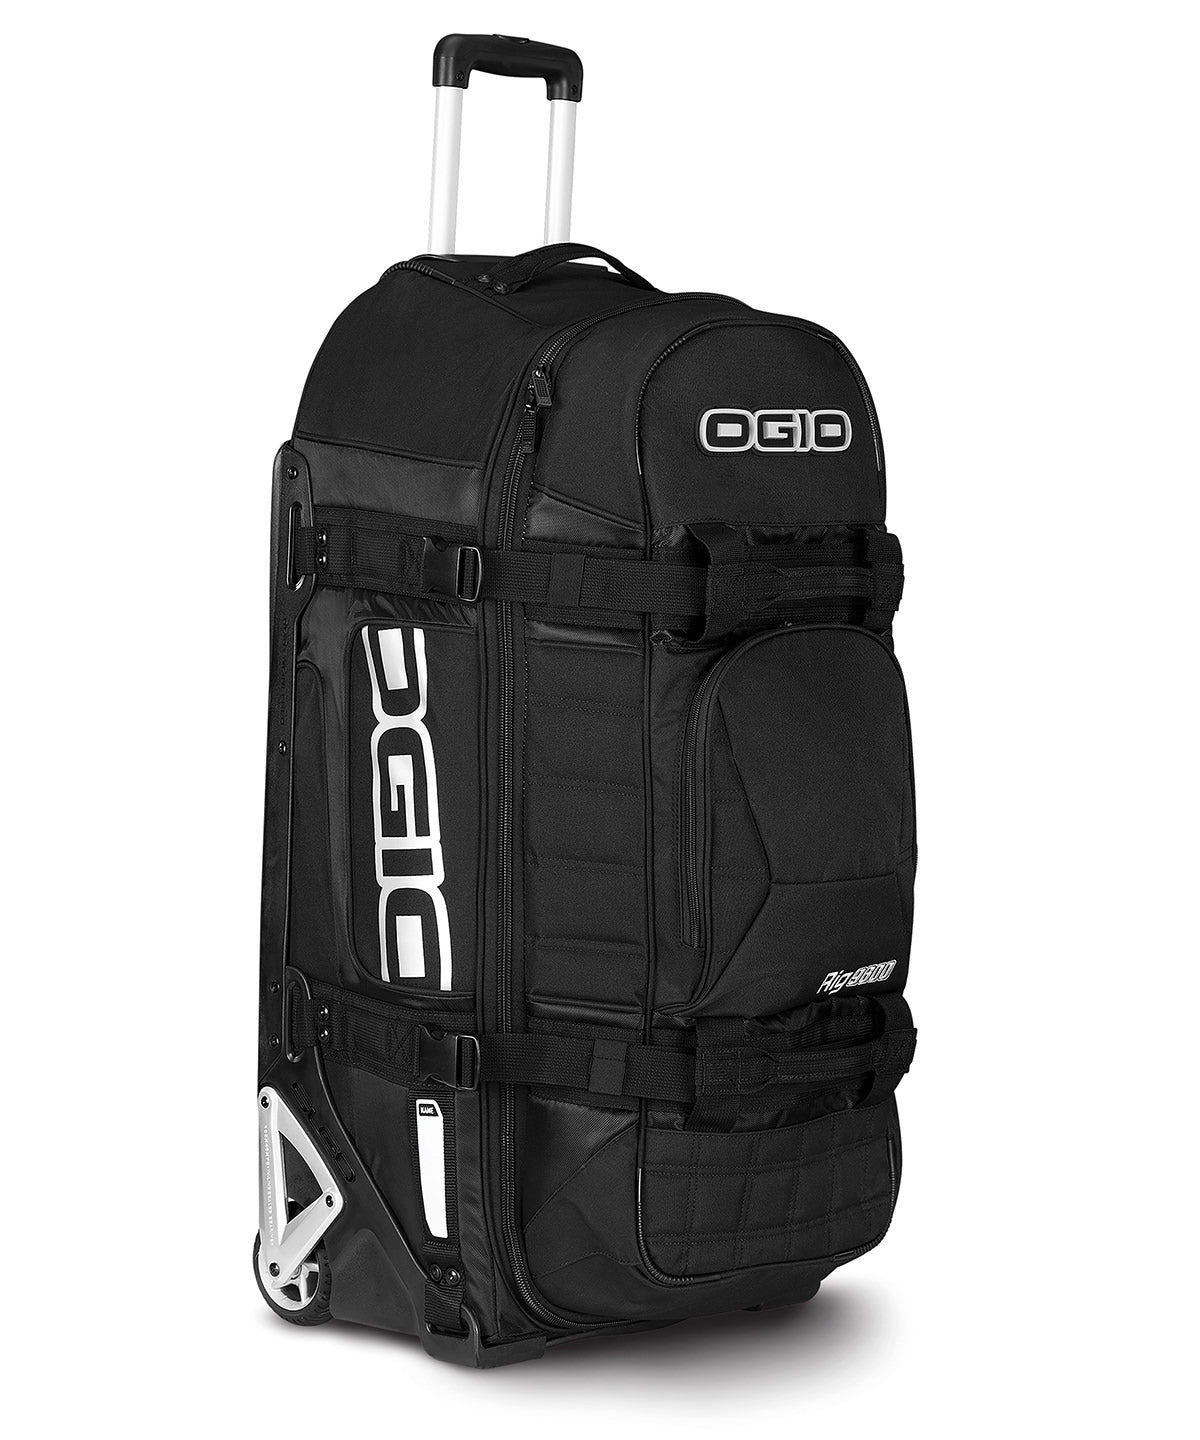 Töskur - Rig 9800 Gear And Travel Bag